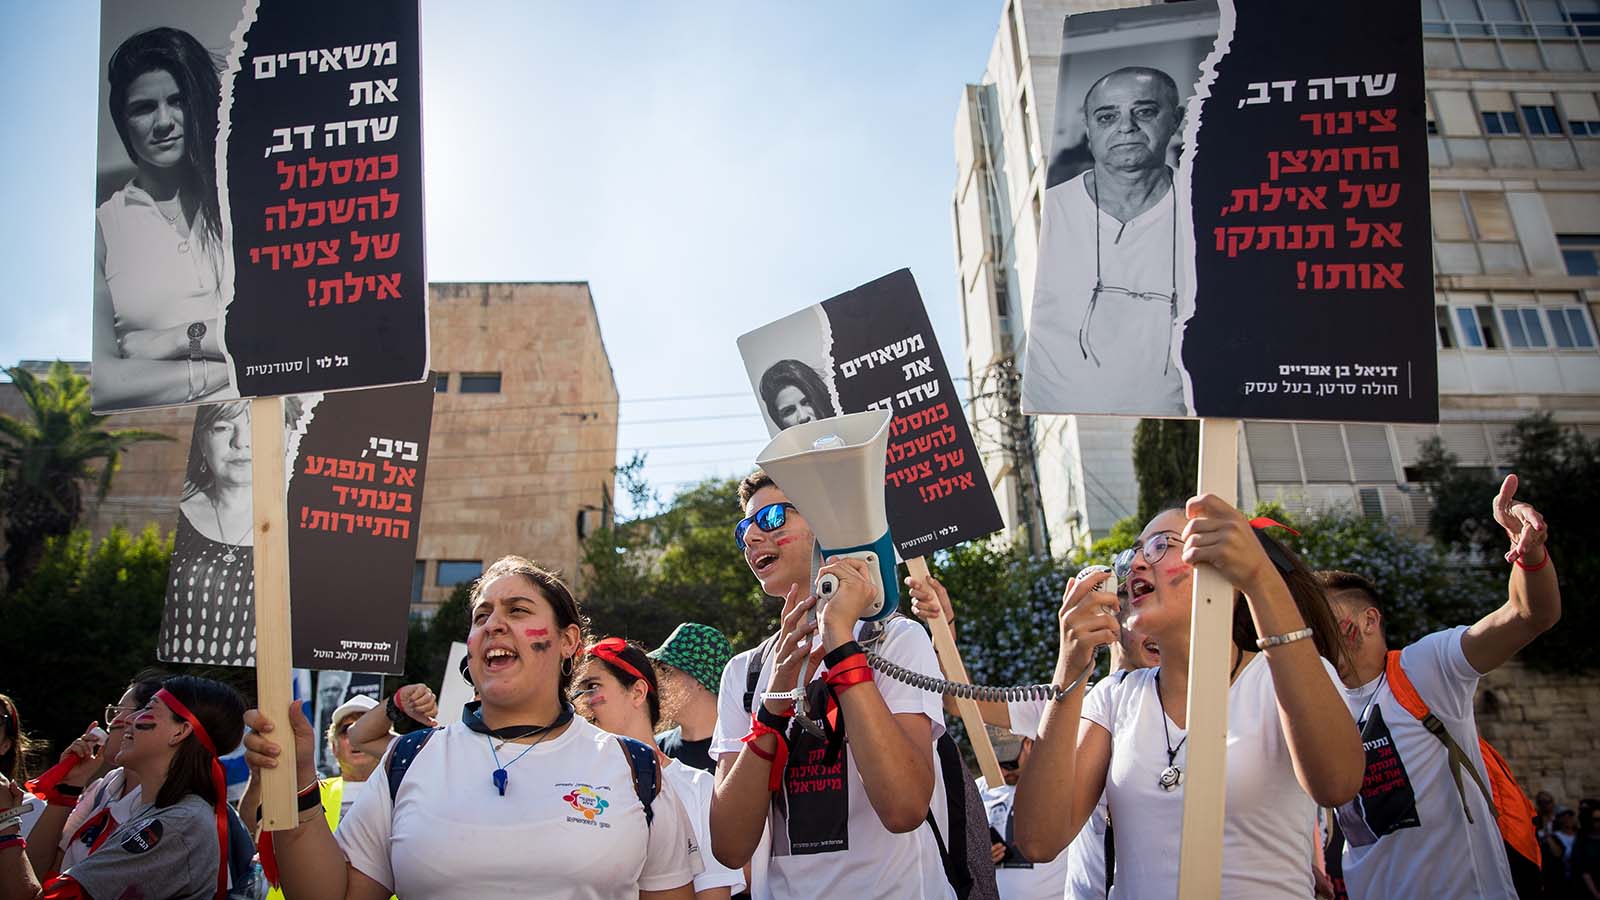 הפגנת תושבי אילת וחבל אילות מול בית ראש הממשלה בירושלים במחאה על סגירת שדה דב, 17 ביוני 2019 (צילום: יונתן זינדל/פלאש90)